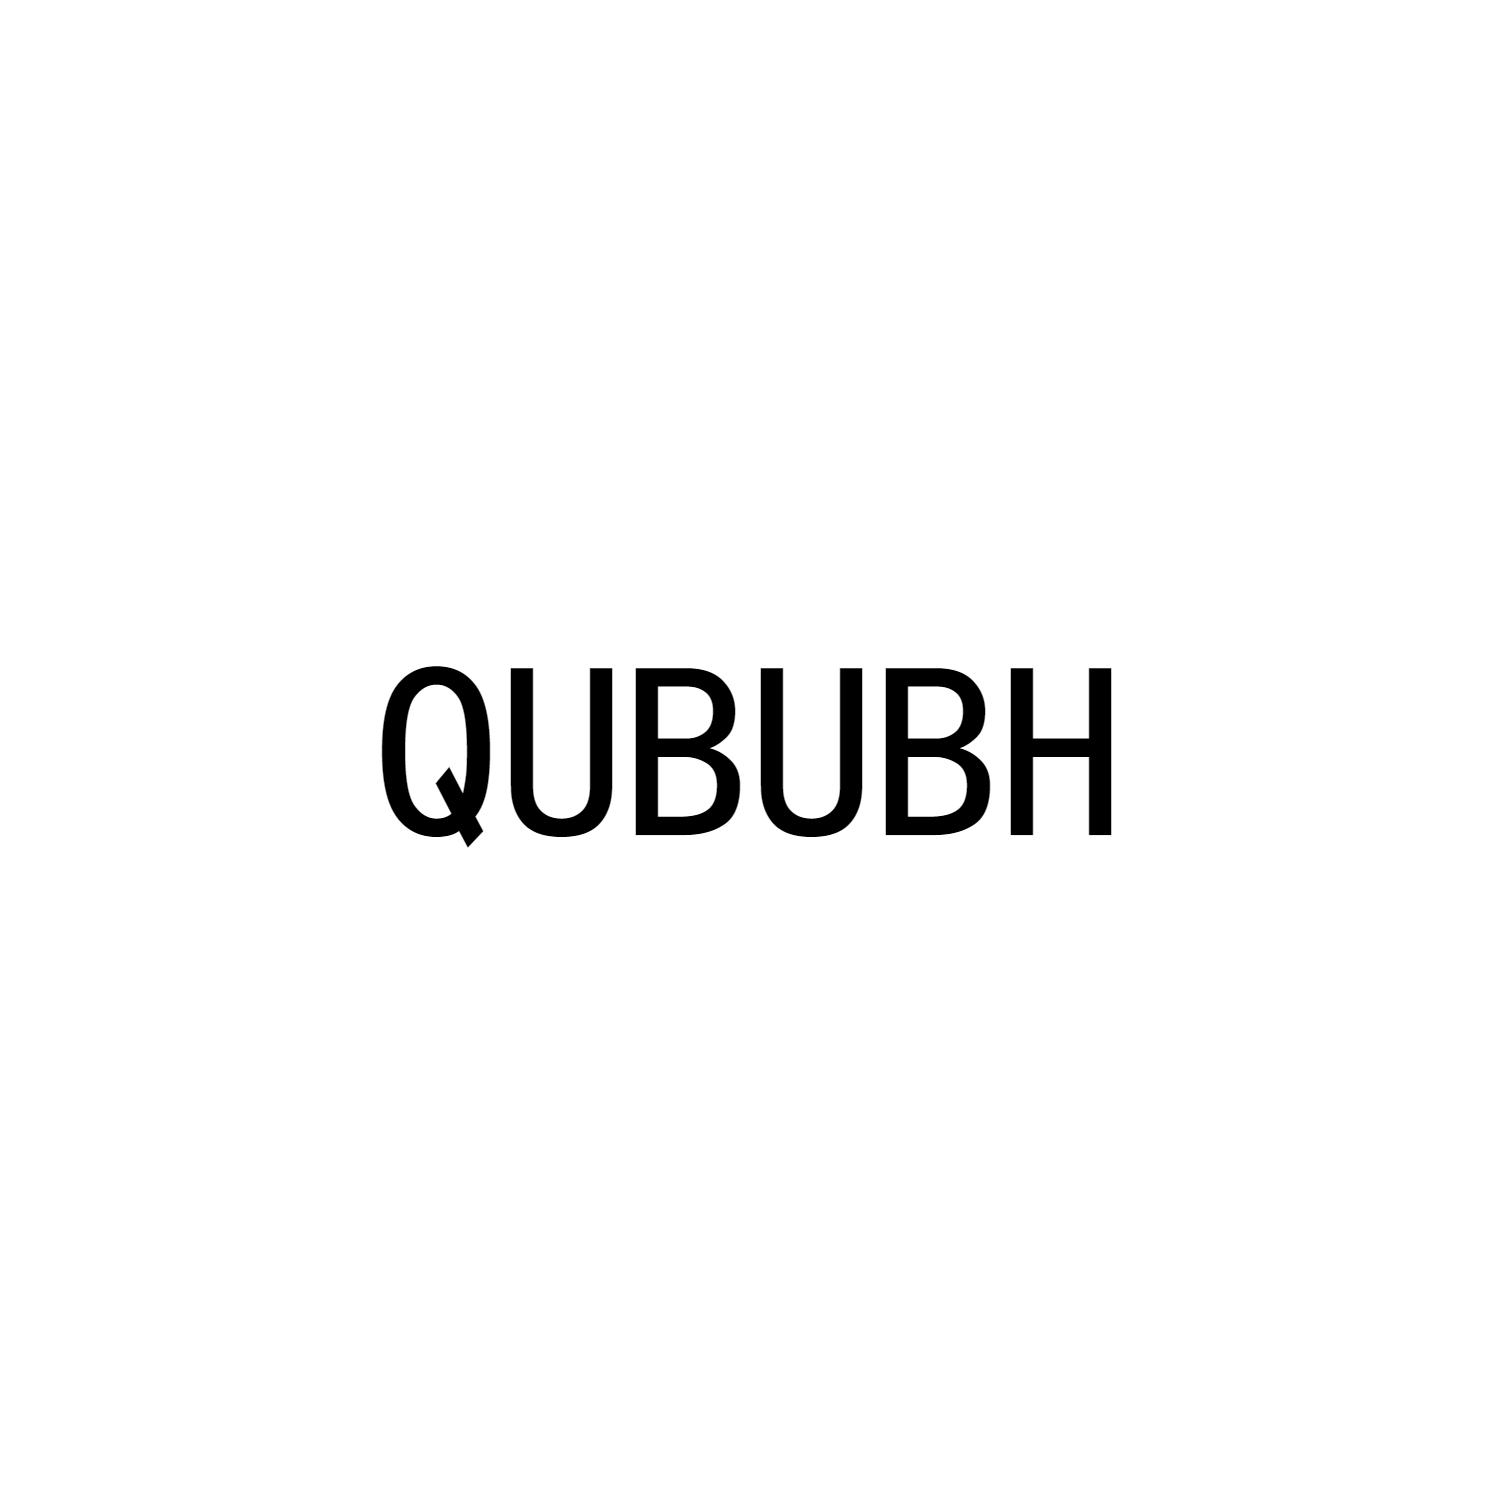 QUBUBH商标转让